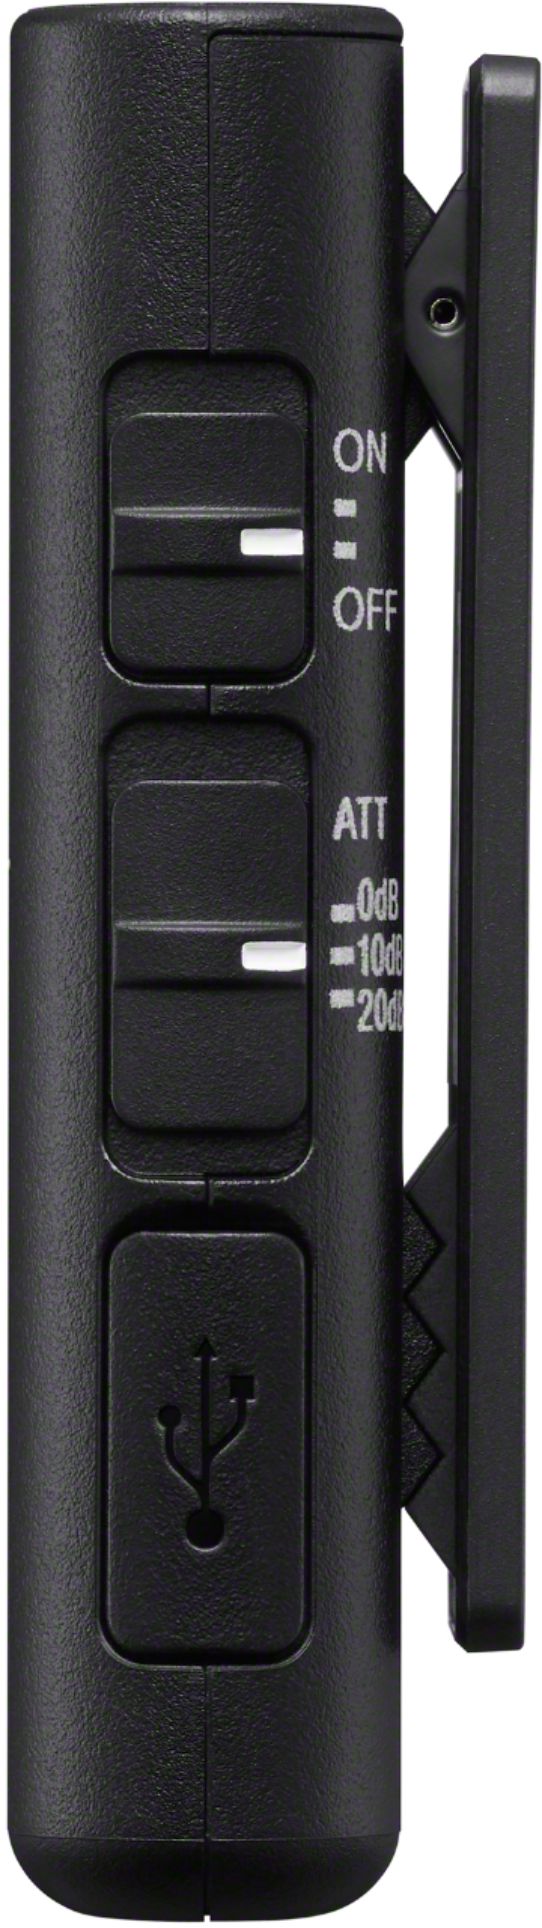 Sony ECMW2BT Omnidirectional Wireless Microphone with Bluetooth ECMW2BT -  Best Buy